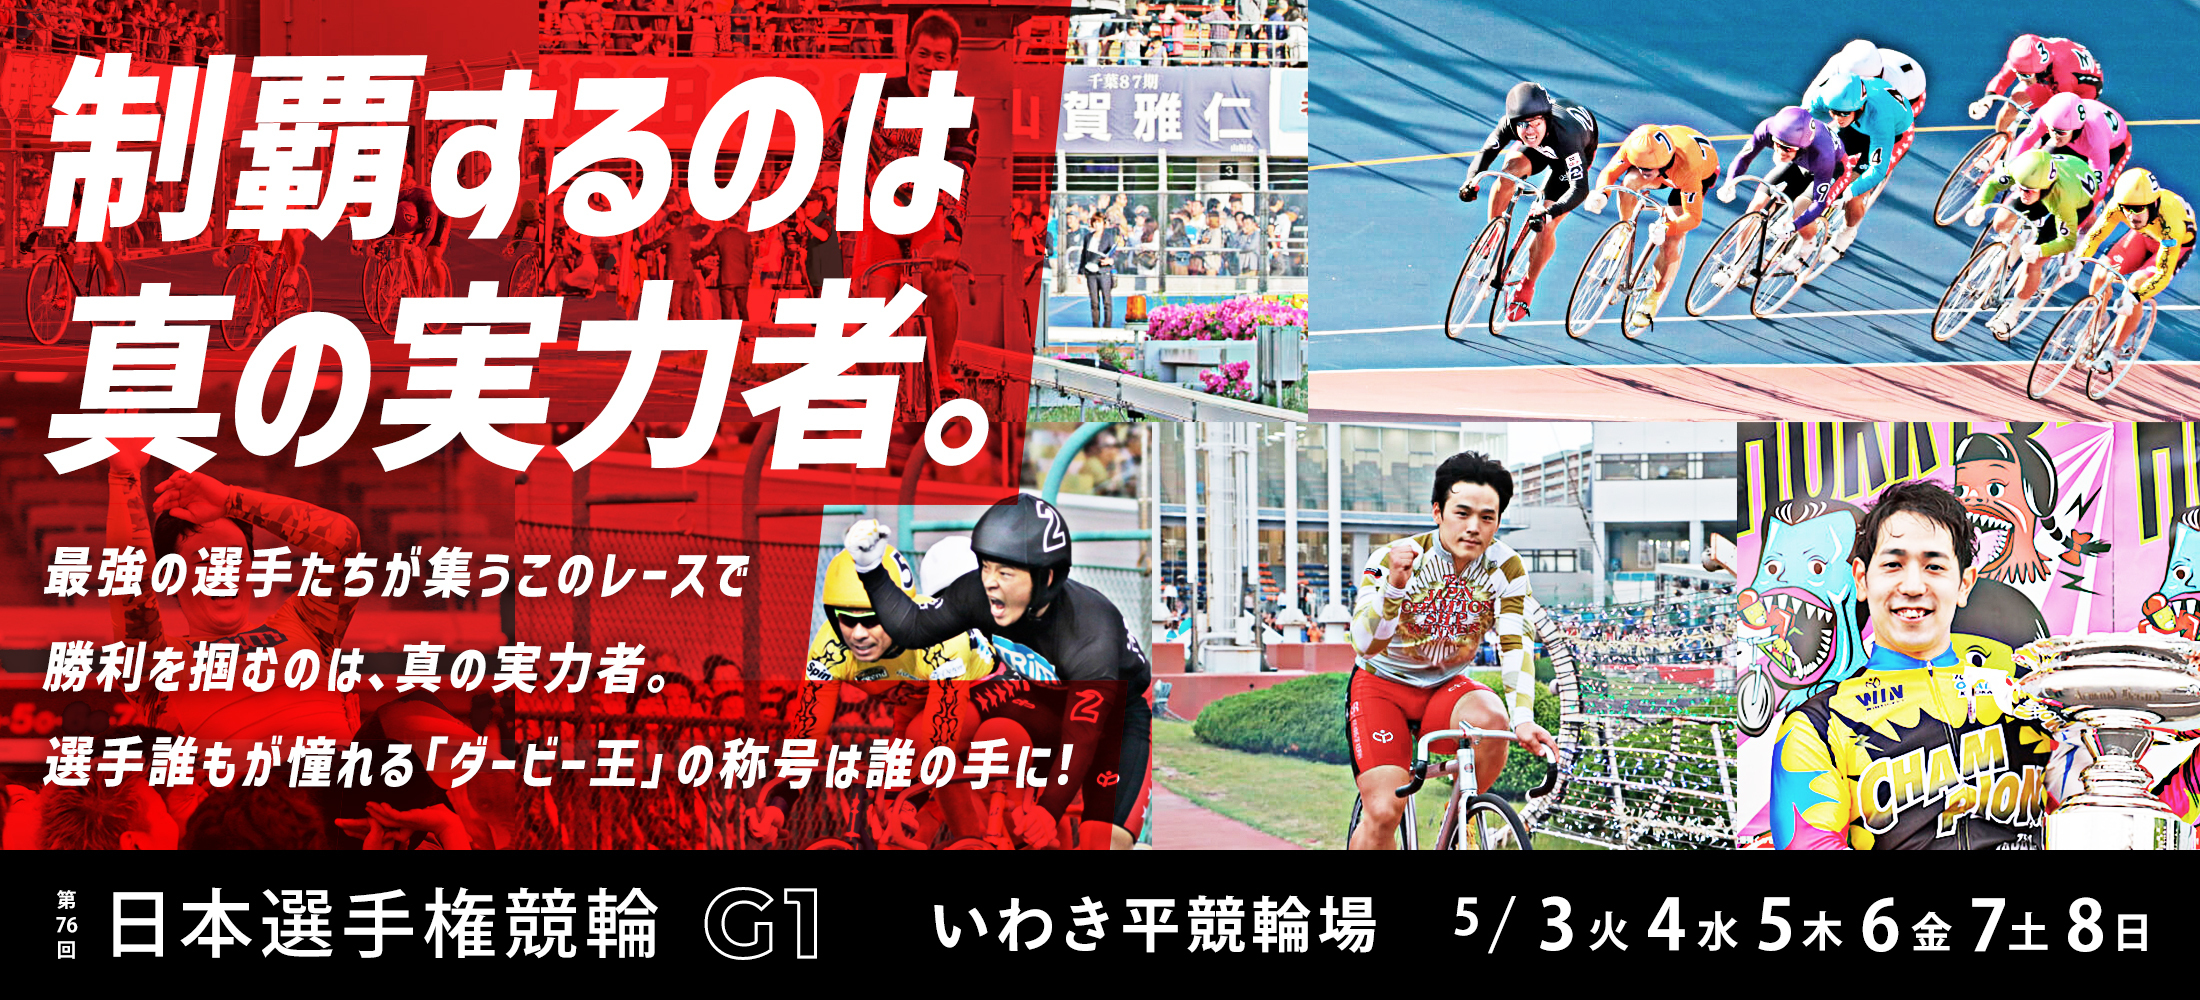 いわき平競輪【G1】「第76回日本選手権競輪G1」特設サイト